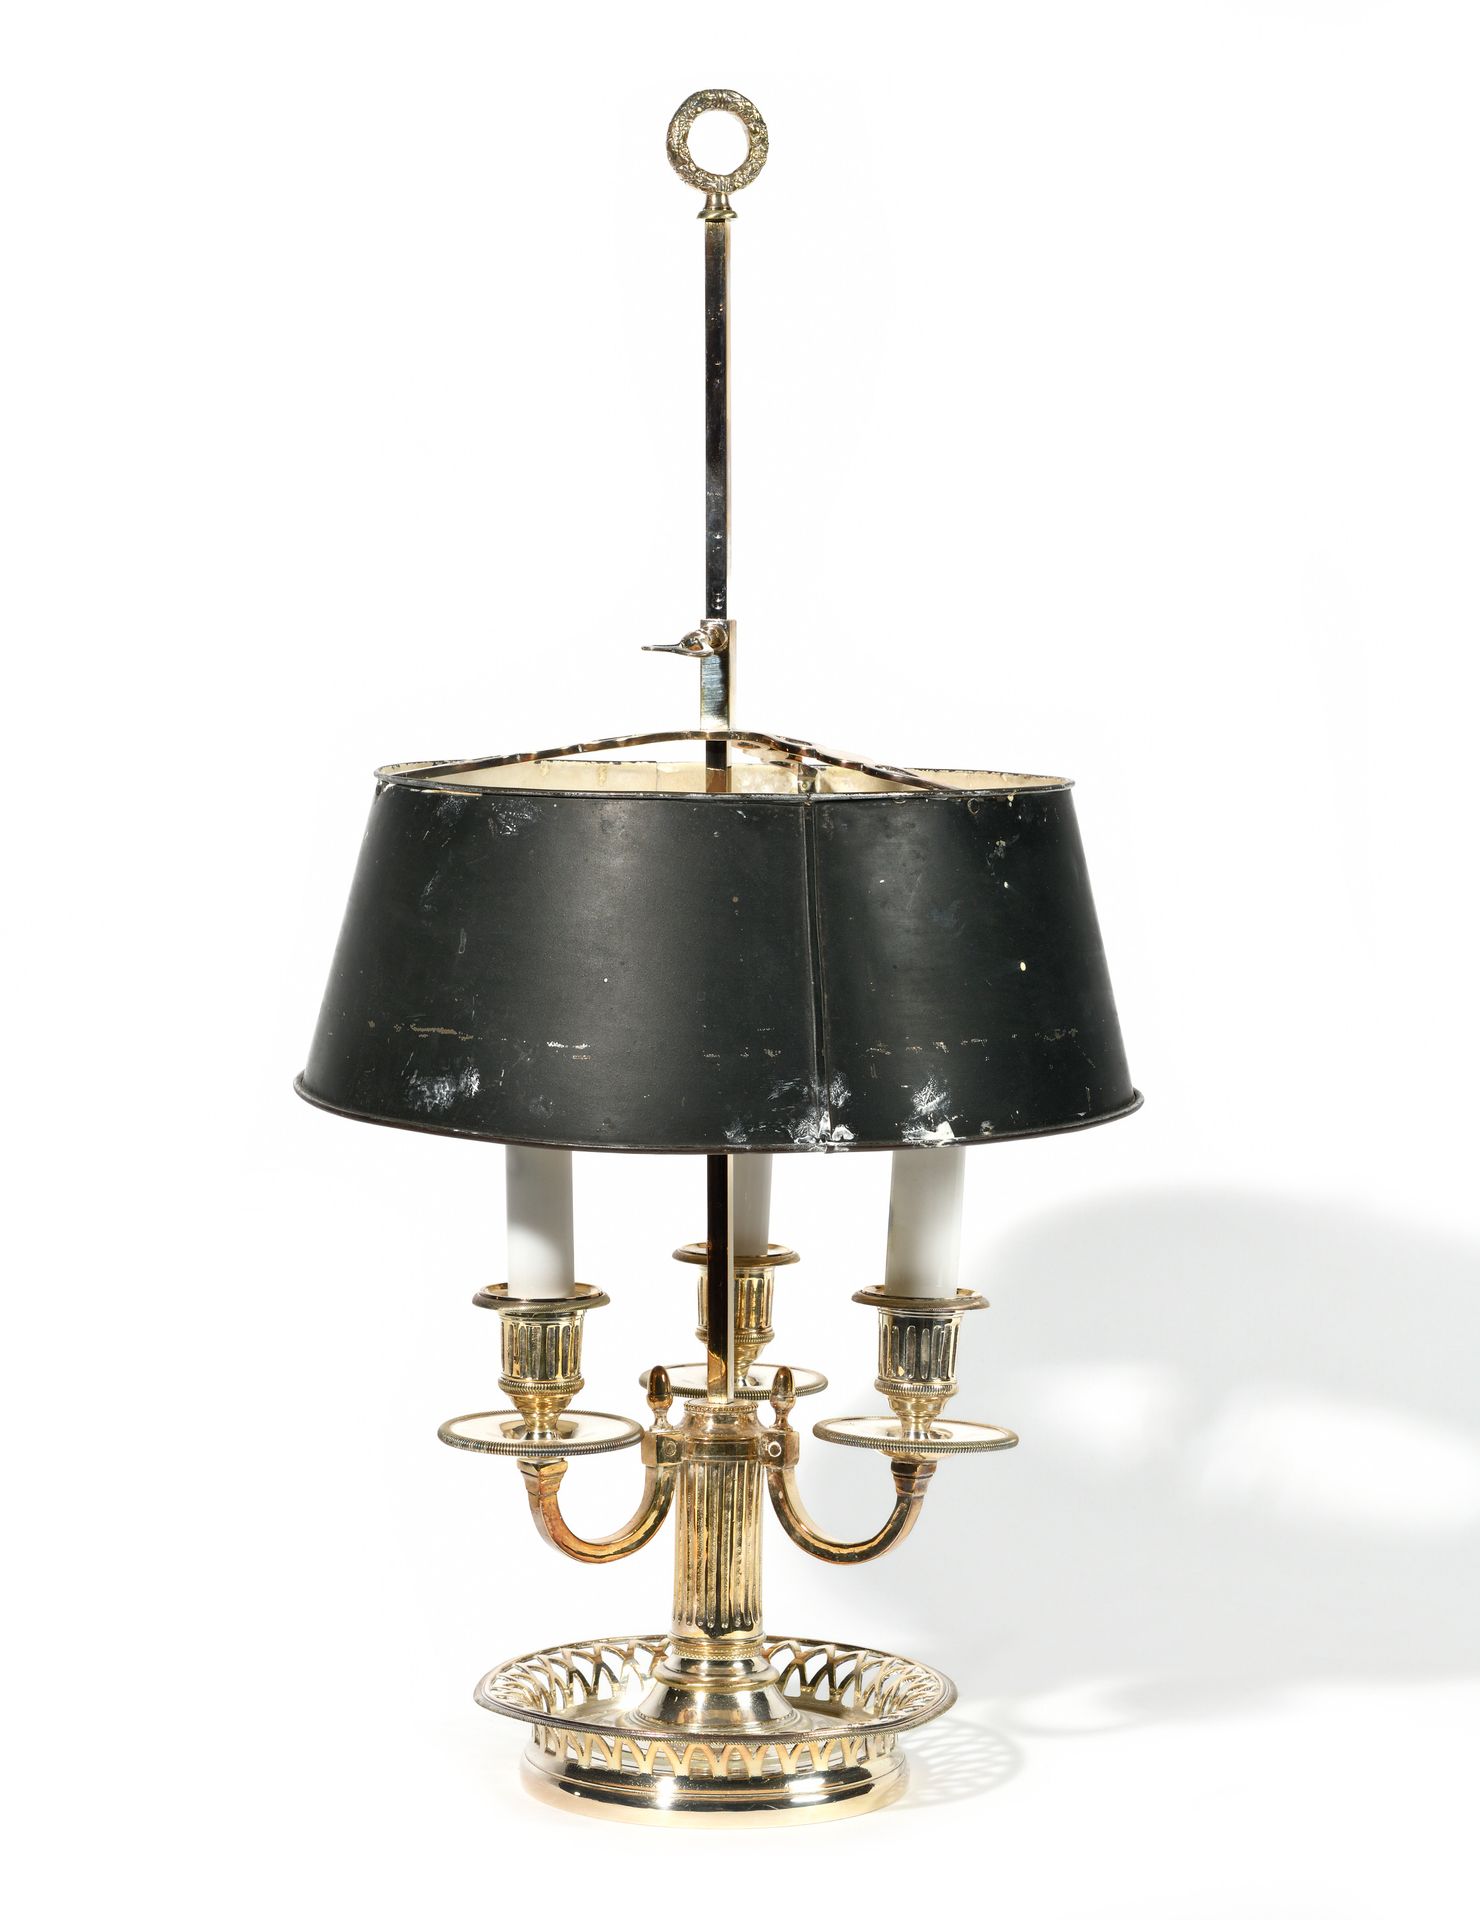 Null 热水瓶灯 
镀银金属灯臂、凹槽灯杆和叶状底座。漆面金属灯罩。 
十九世纪制造。
高度：53 厘米